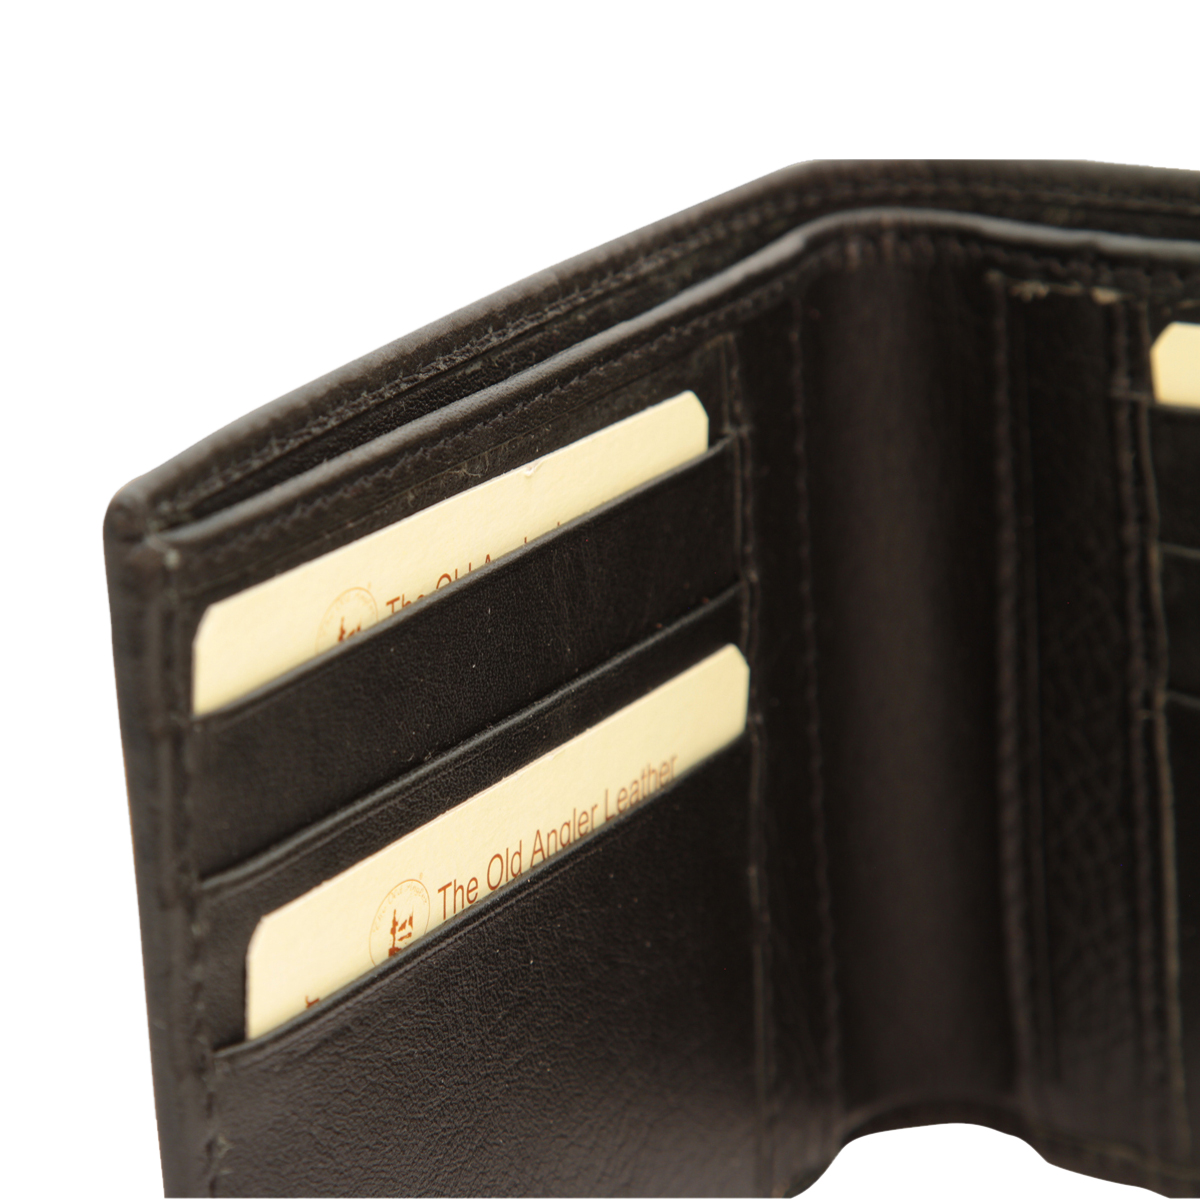 Leather bifold wallet - black | 800989NE US | Old Angler Firenze